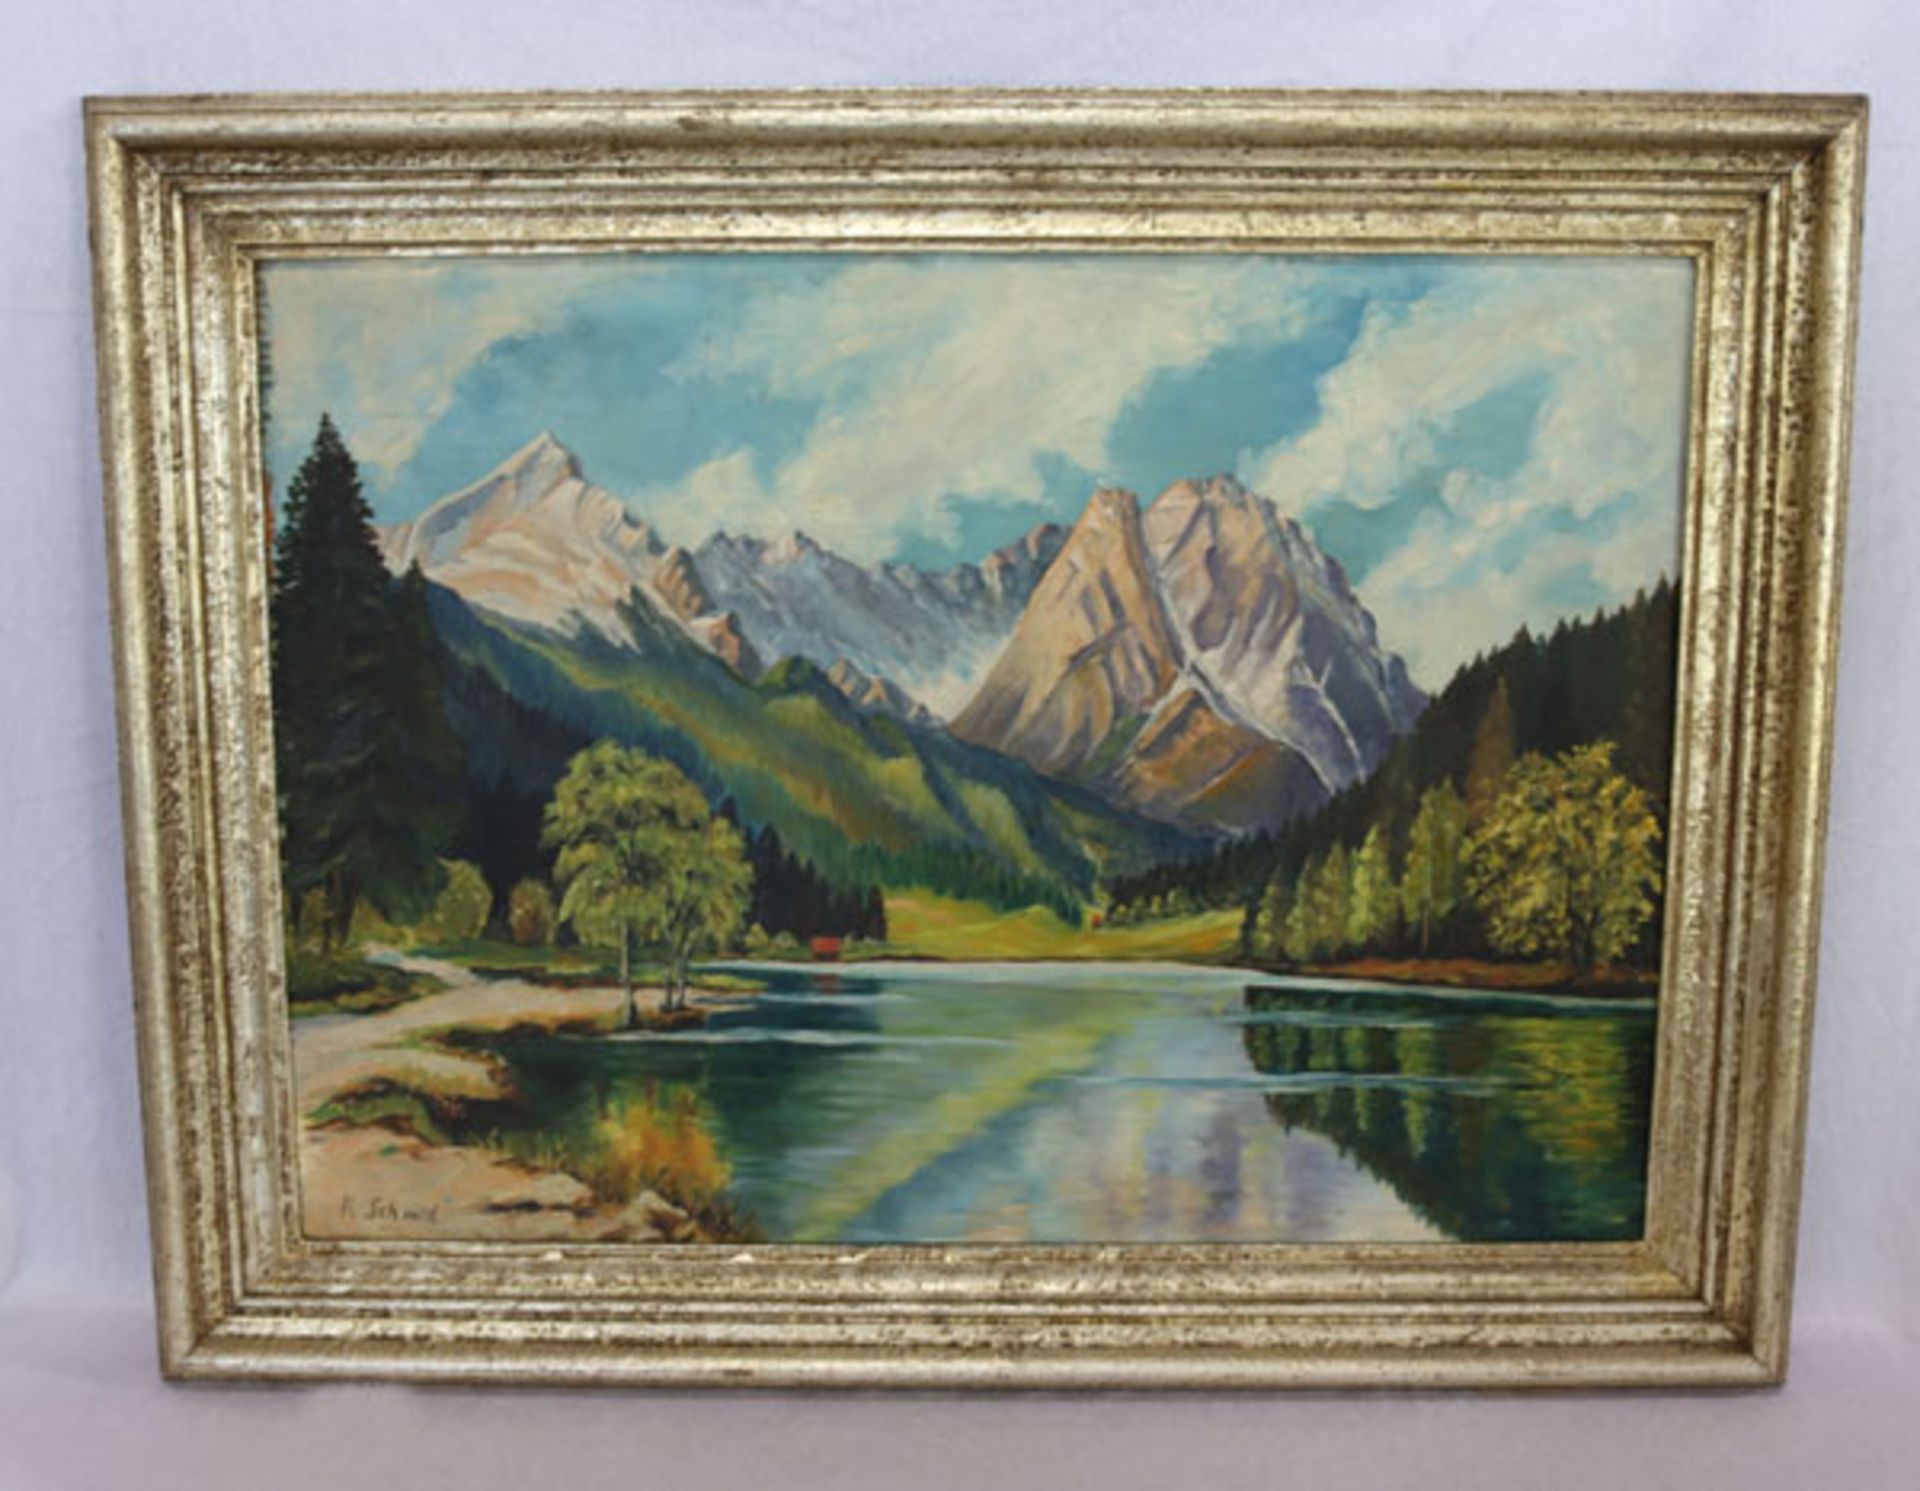 Gemälde ÖL/Hartfaser 'Riessersee mit Wettersteingebirge', signiert R. Schmid, gerahmt, Rahmen leicht